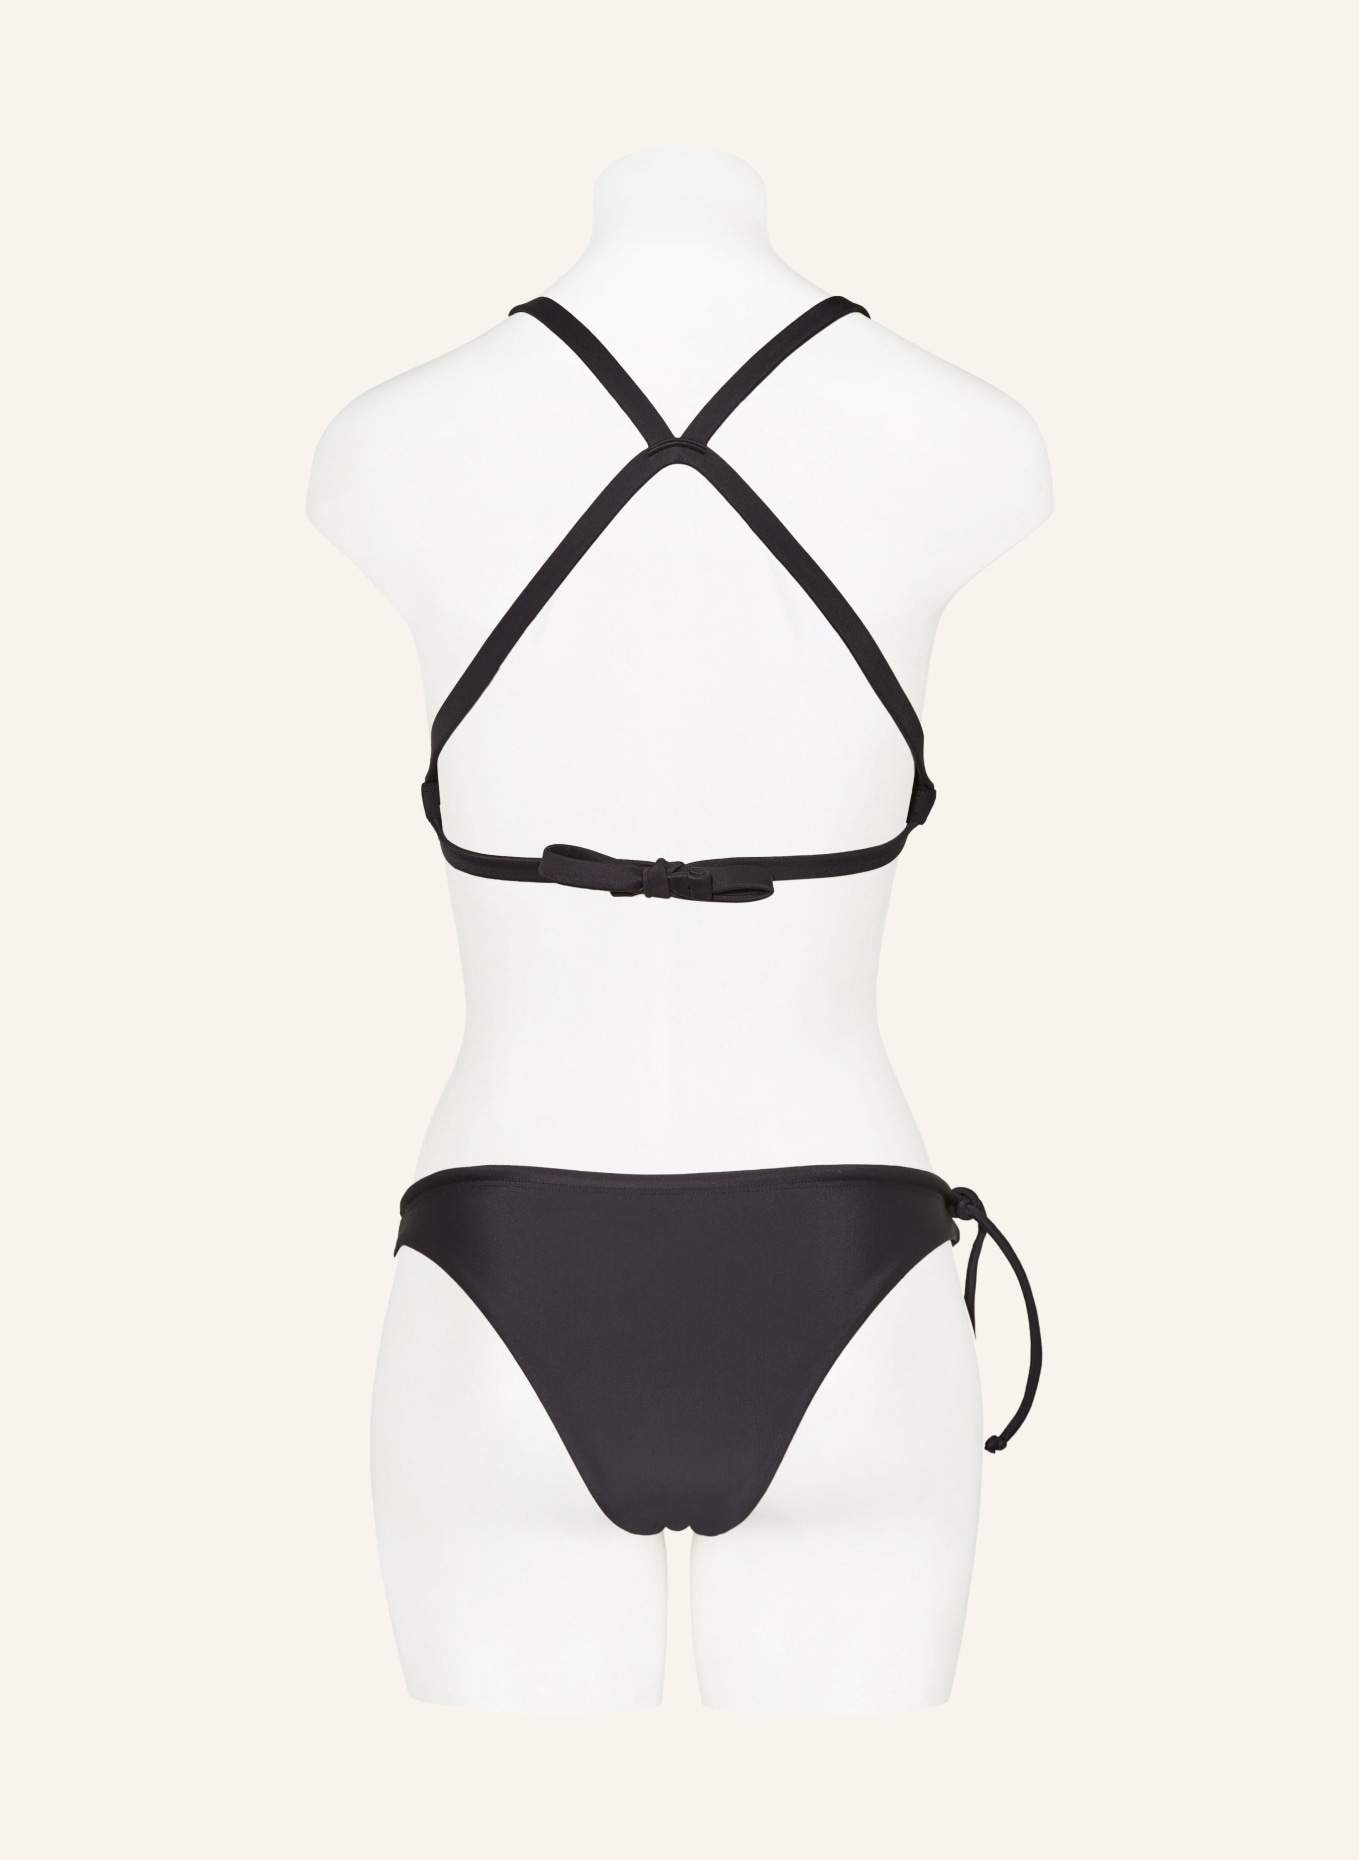 Oy Surf Basic bikini bottoms MAKO with UV protection, Color: BLACK (Image 3)